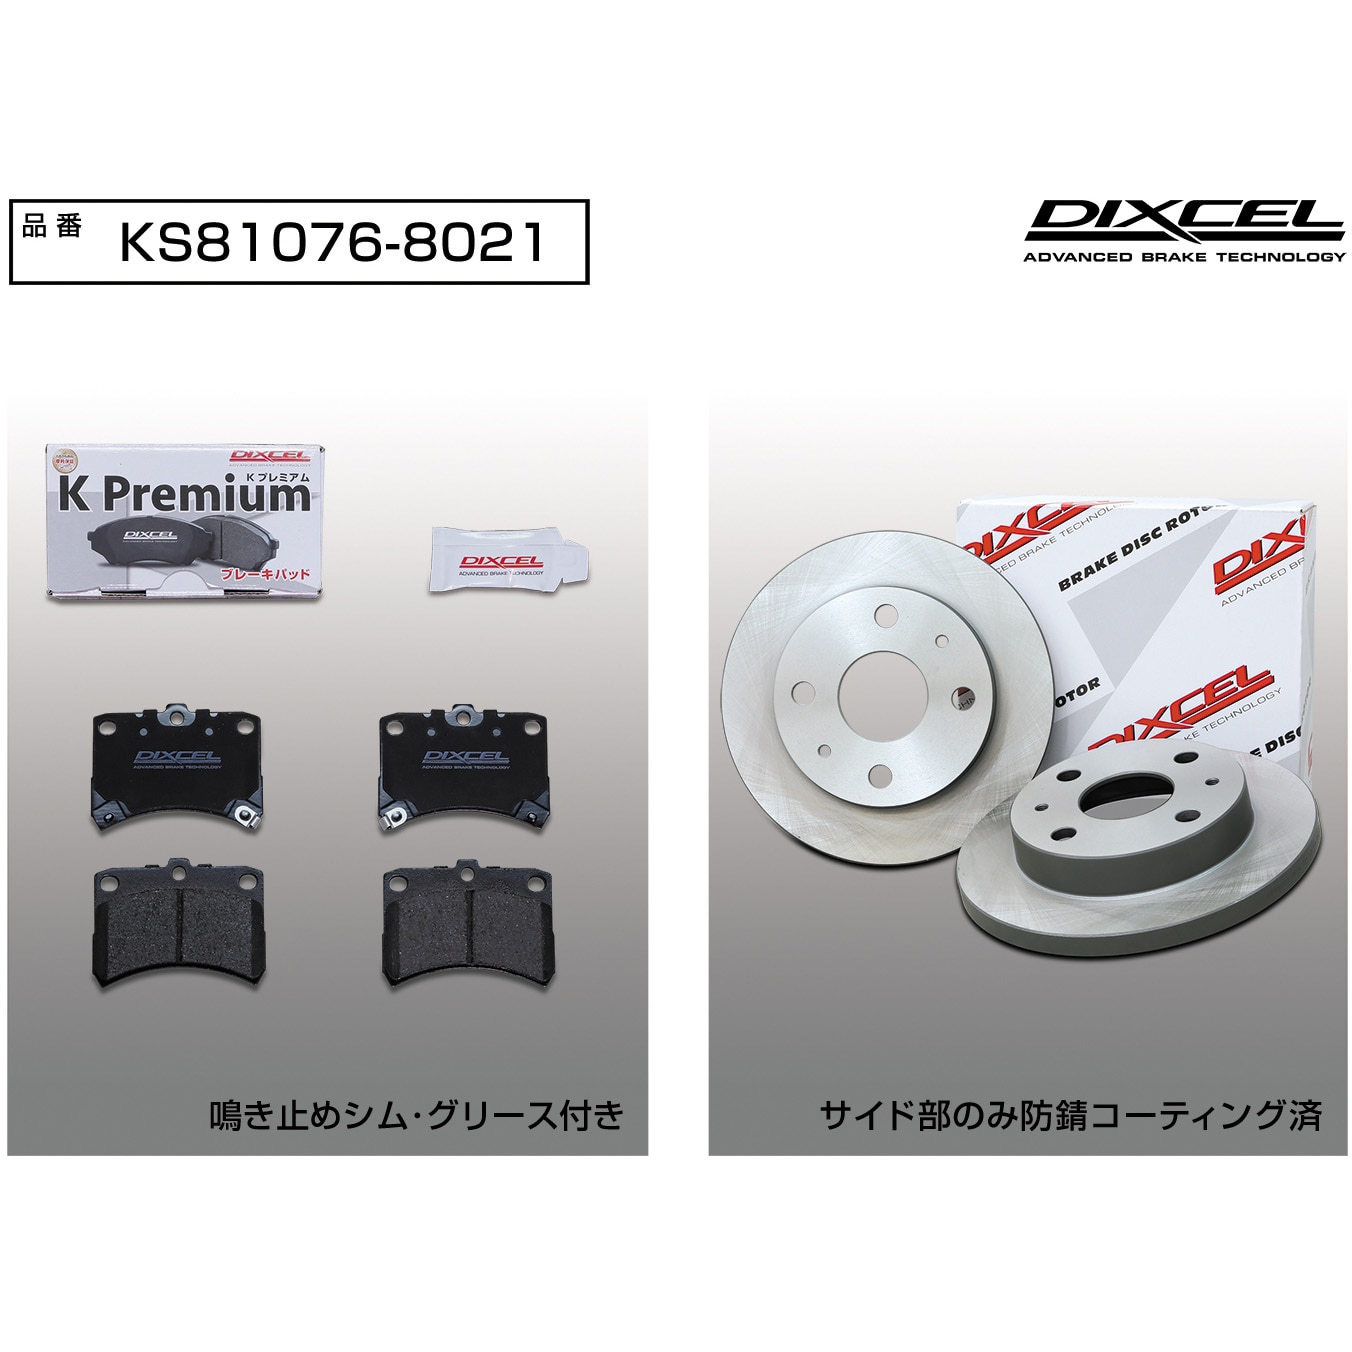 KS81076-8021 ブレーキパッドKP+ローターKDセット(KSタイプ) 1